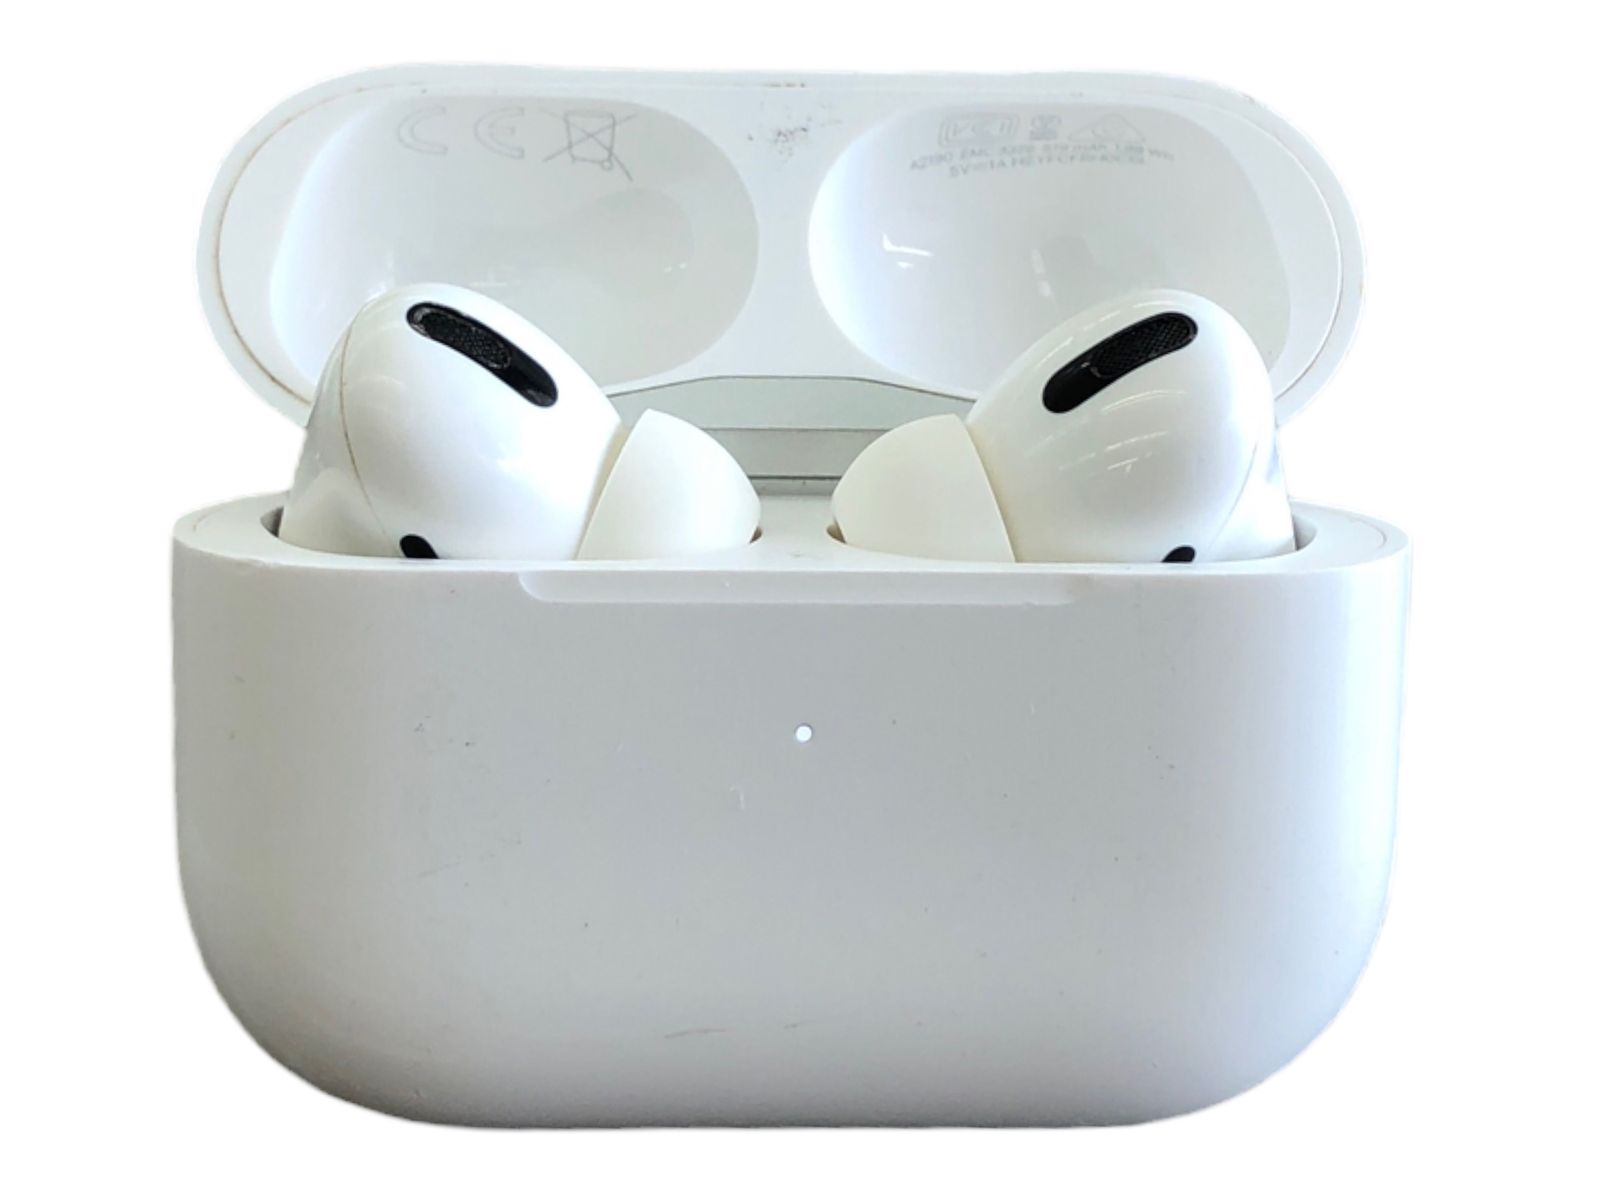 Apple (アップル) AirPods Pro ワイヤレスイヤホン エアポッズ プロ 第1世代初期 MWP22J/A ホワイト 家電 /004